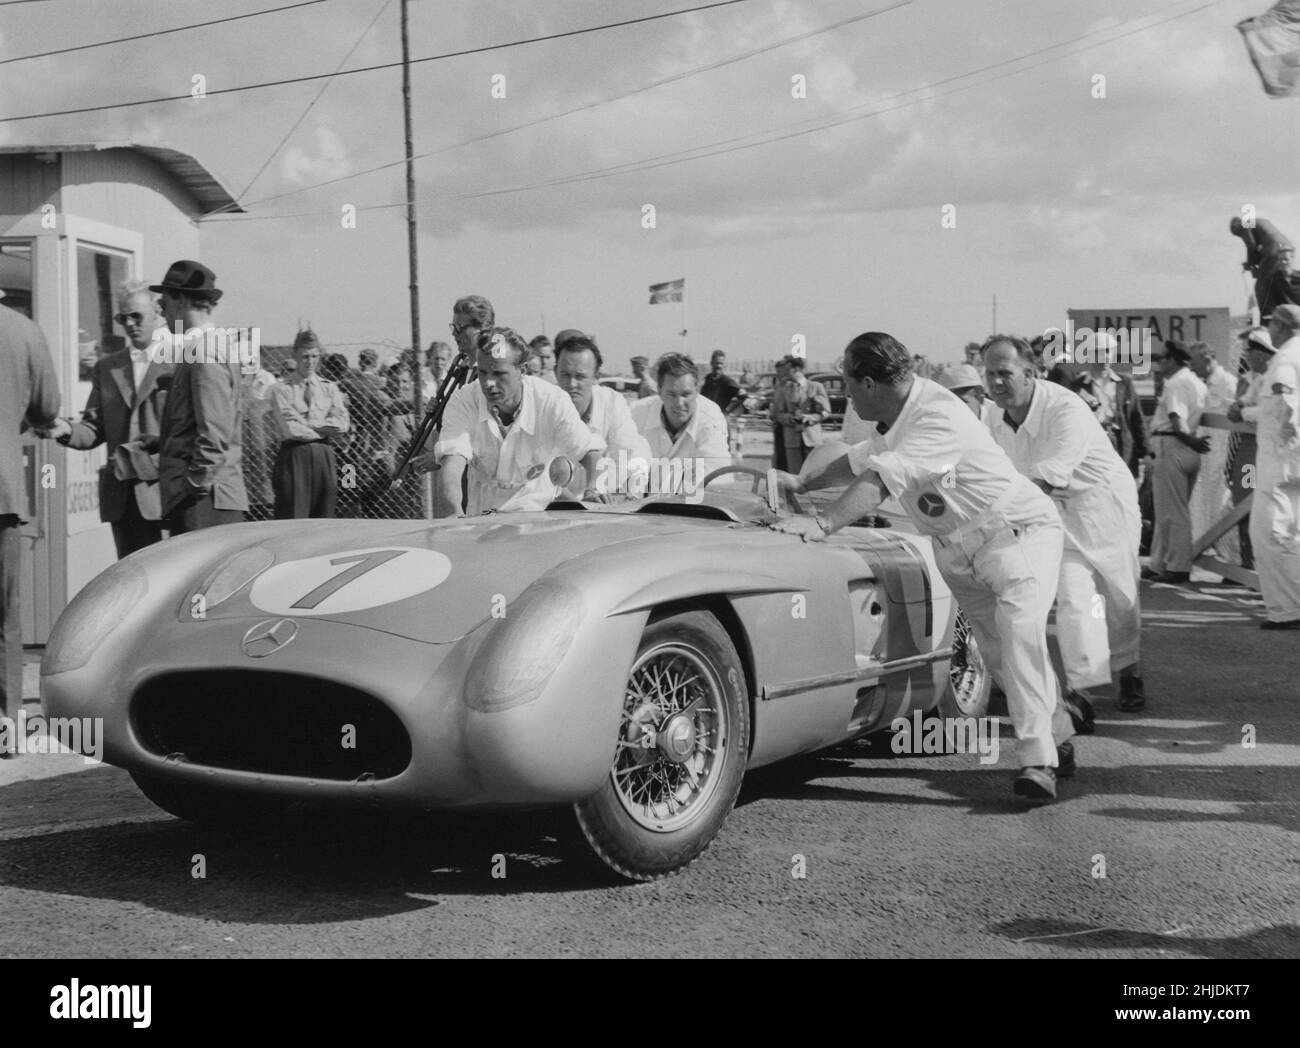 Voiture de course du 1950s.L'équipe de mécaniciens Mercedes pousse une voiture de course Mercedes lors d'une course Grand prix 1955 dans la ville suédoise Kristianstad. Banque D'Images